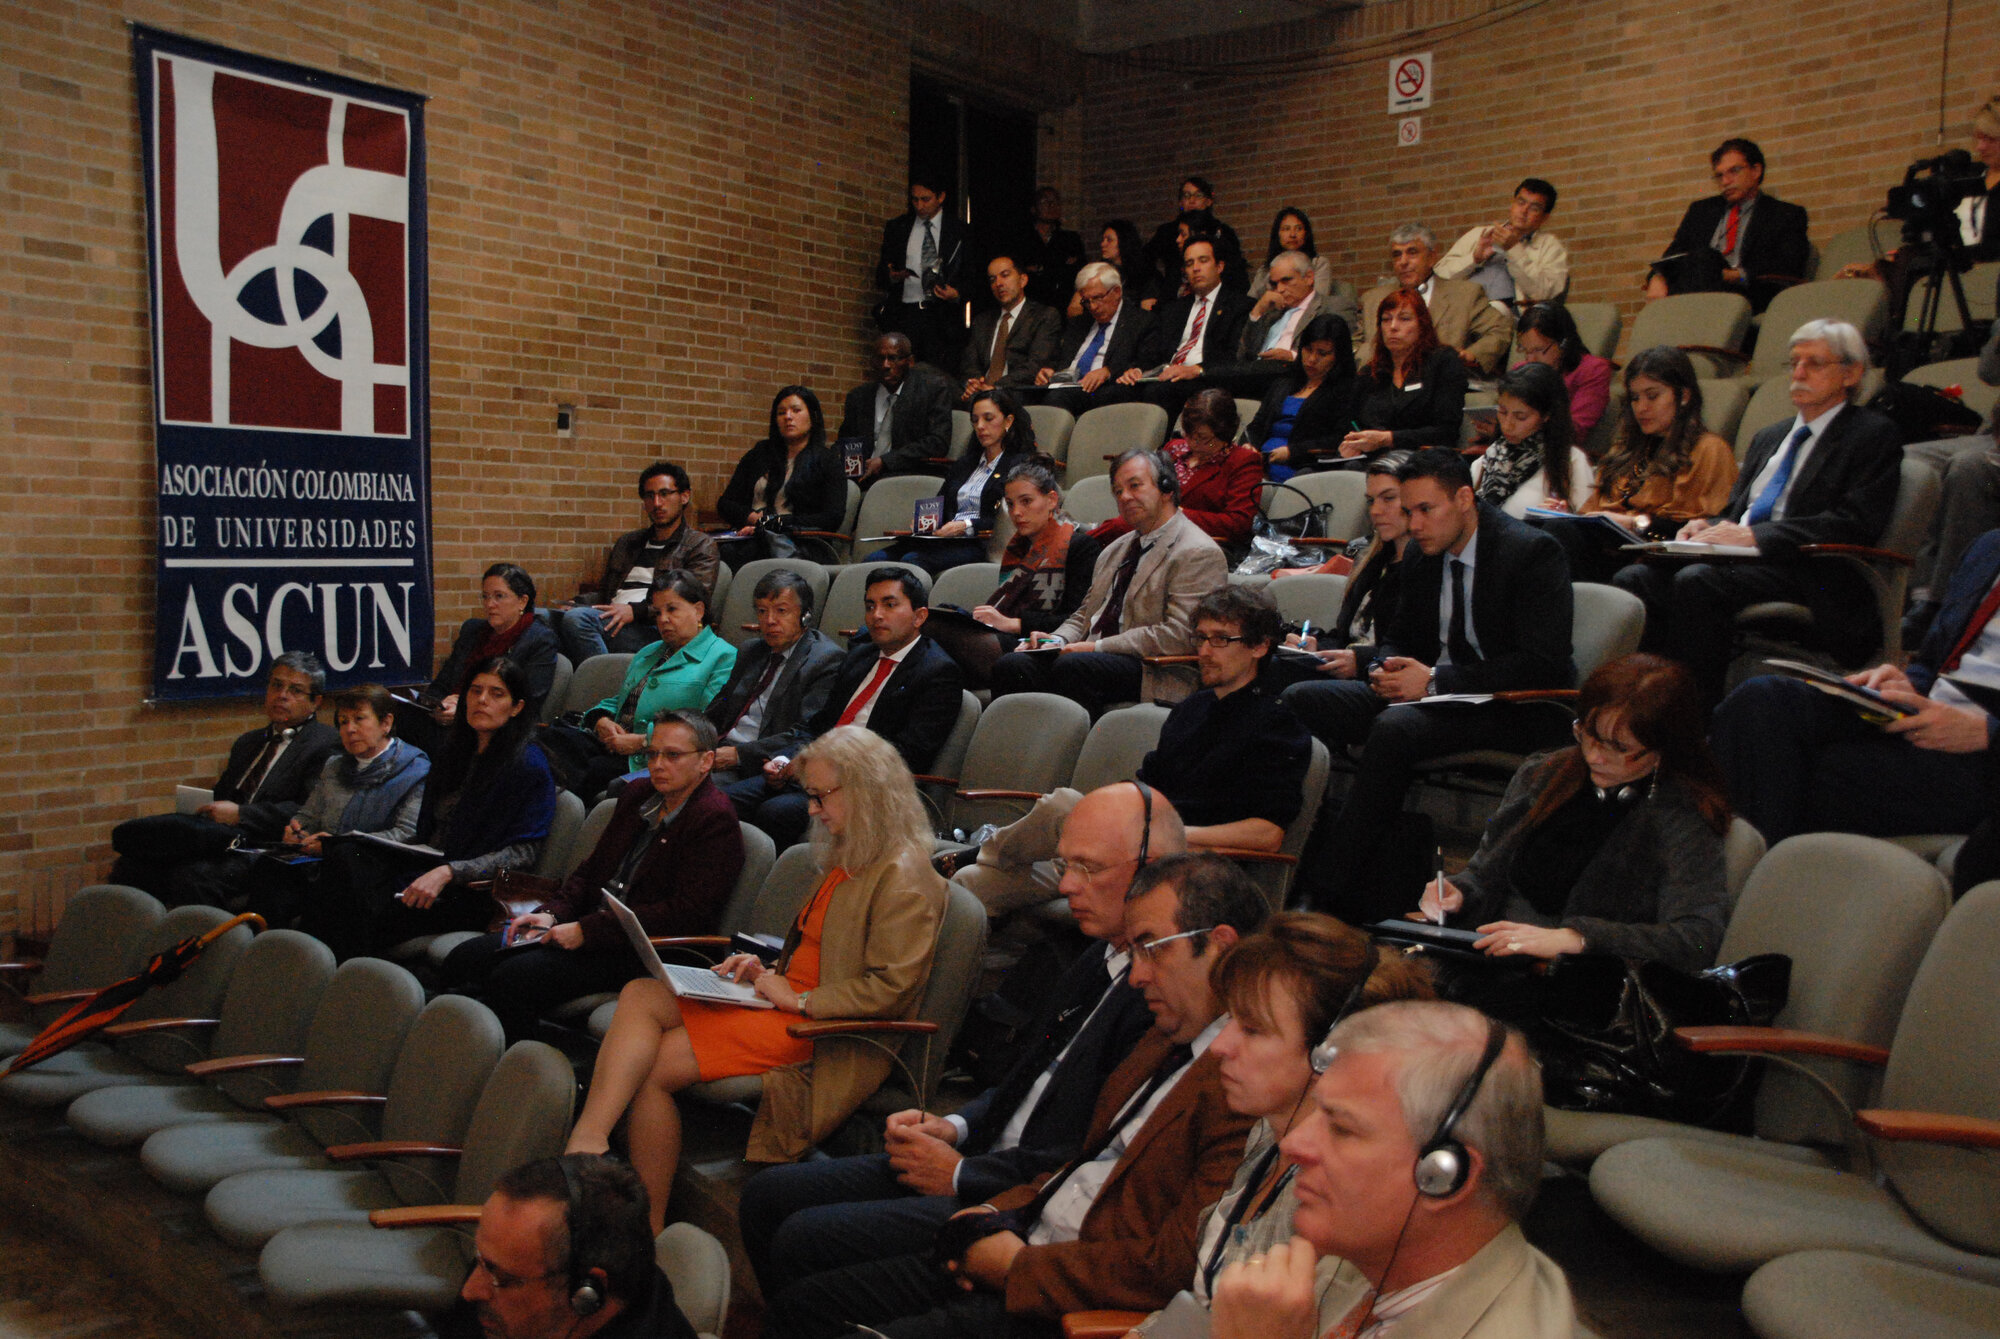 El encuentro llevado a cabo en la U.N. fue convocado por la institución y la Asociación Colombiana de Universidades (Ascun). (Fotos: Felipe Castaño).